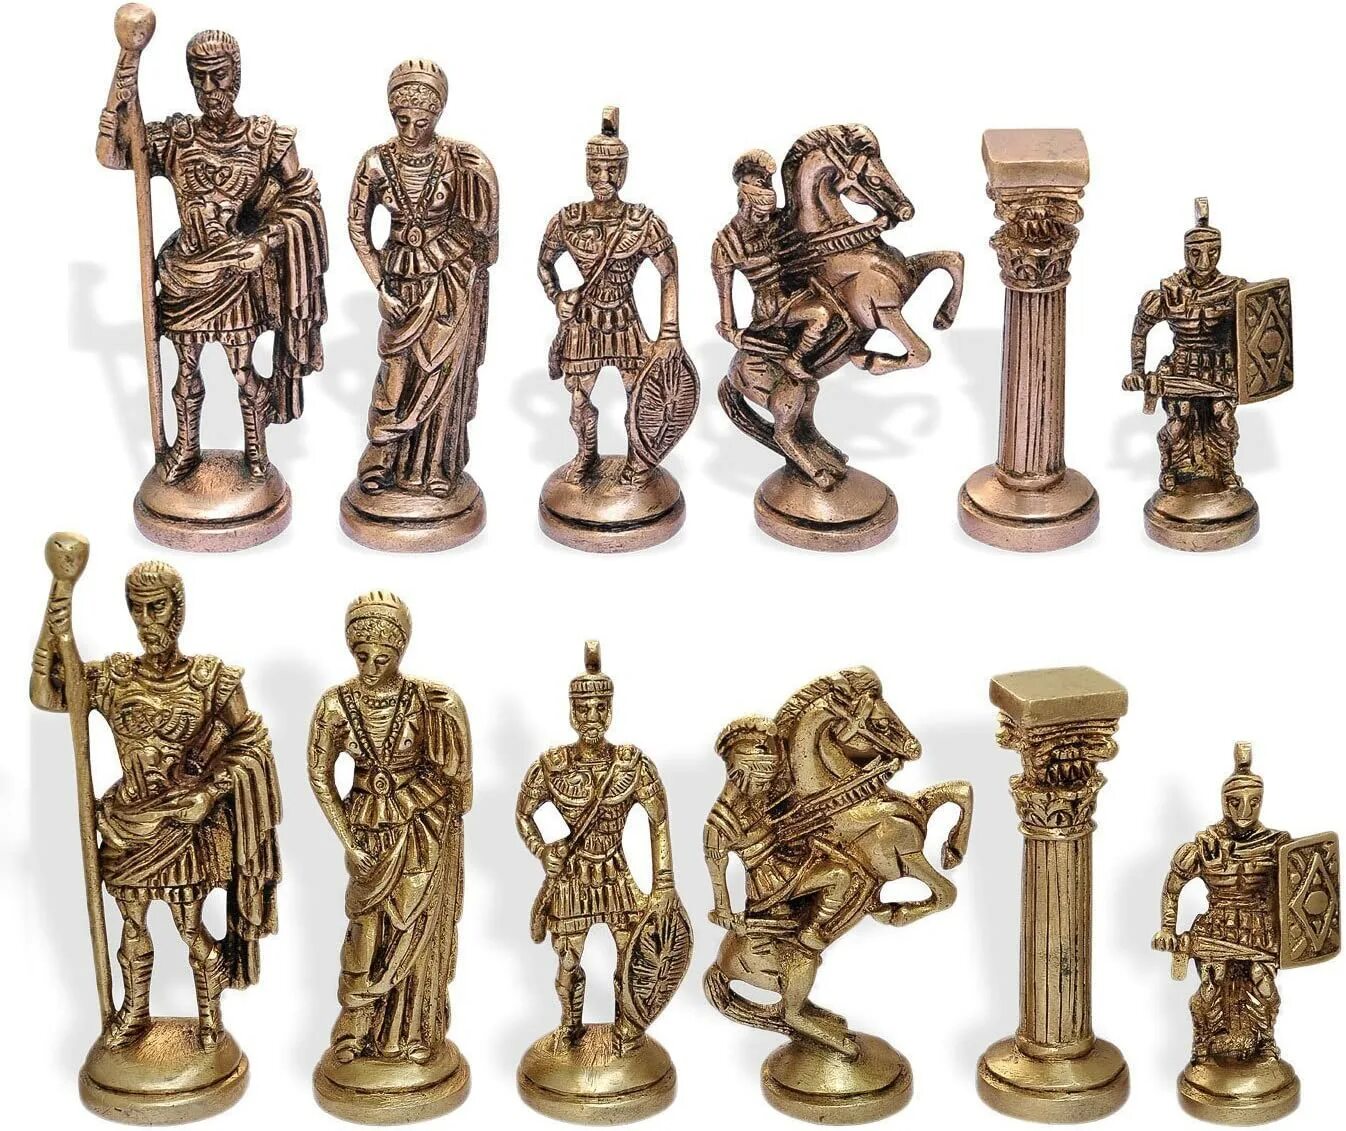 Шахматные фигуры из латуни. Фигурки из бронзы. Статуэтки шахматные фигуры. Латунные шахматные фигурки. Купить старые фигурки